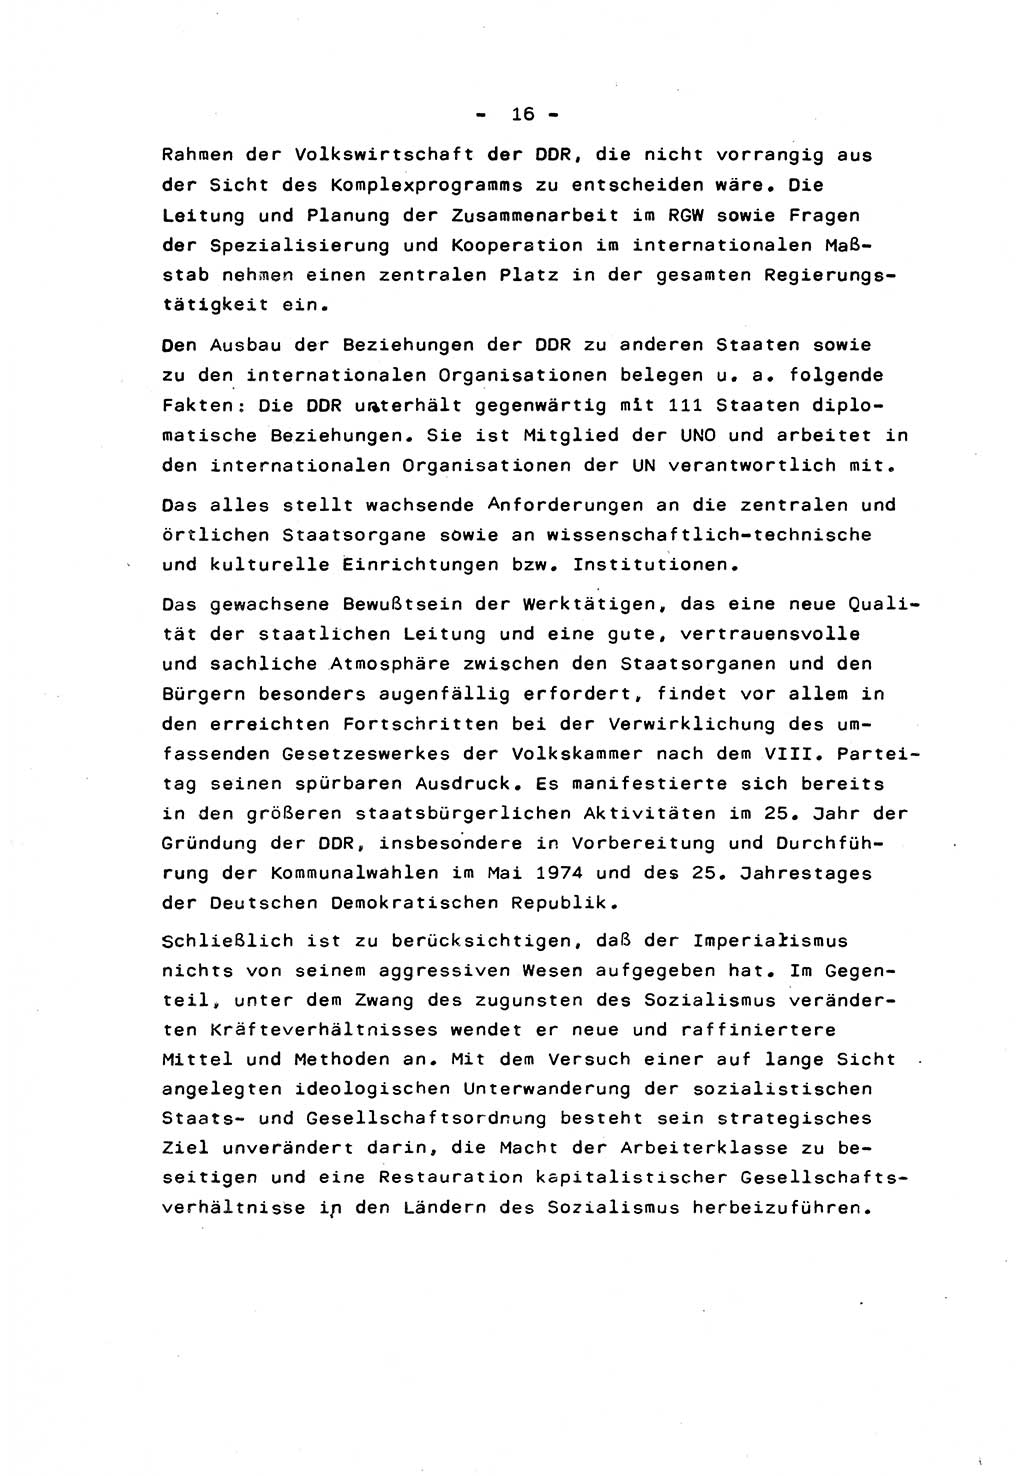 Marxistisch-leninistische Staats- und Rechtstheorie [Deutsche Demokratische Republik (DDR)] 1975, Seite 16 (ML St.-R.-Th. DDR 1975, S. 16)